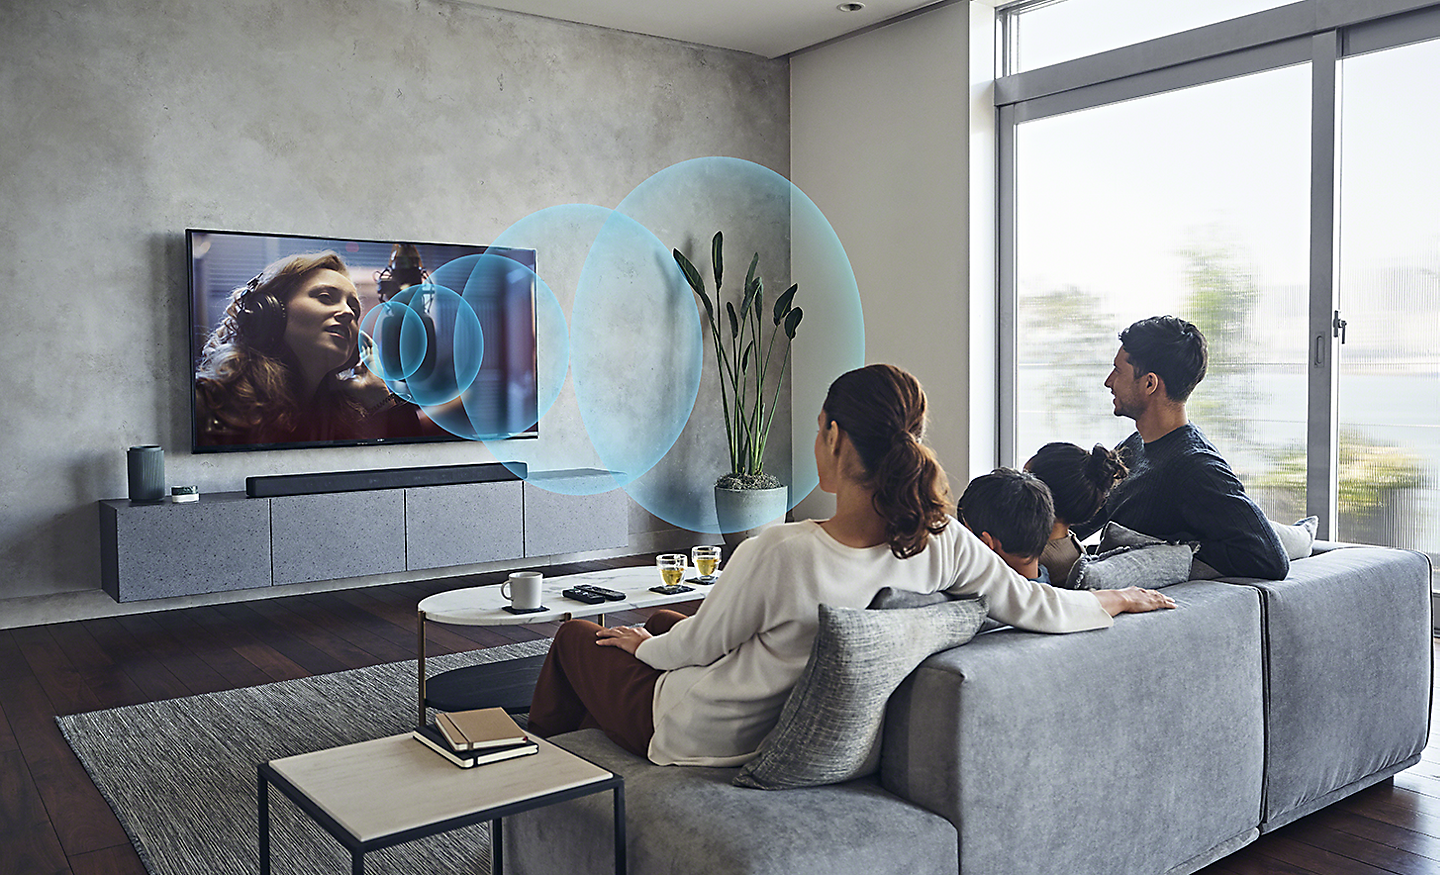 Abbildung einer Familie in einem Wohnzimmer vor einem BRAVIA Fernseher mit Darstellung von blauen Klangwellen, die für Acoustic Center Sync stehen